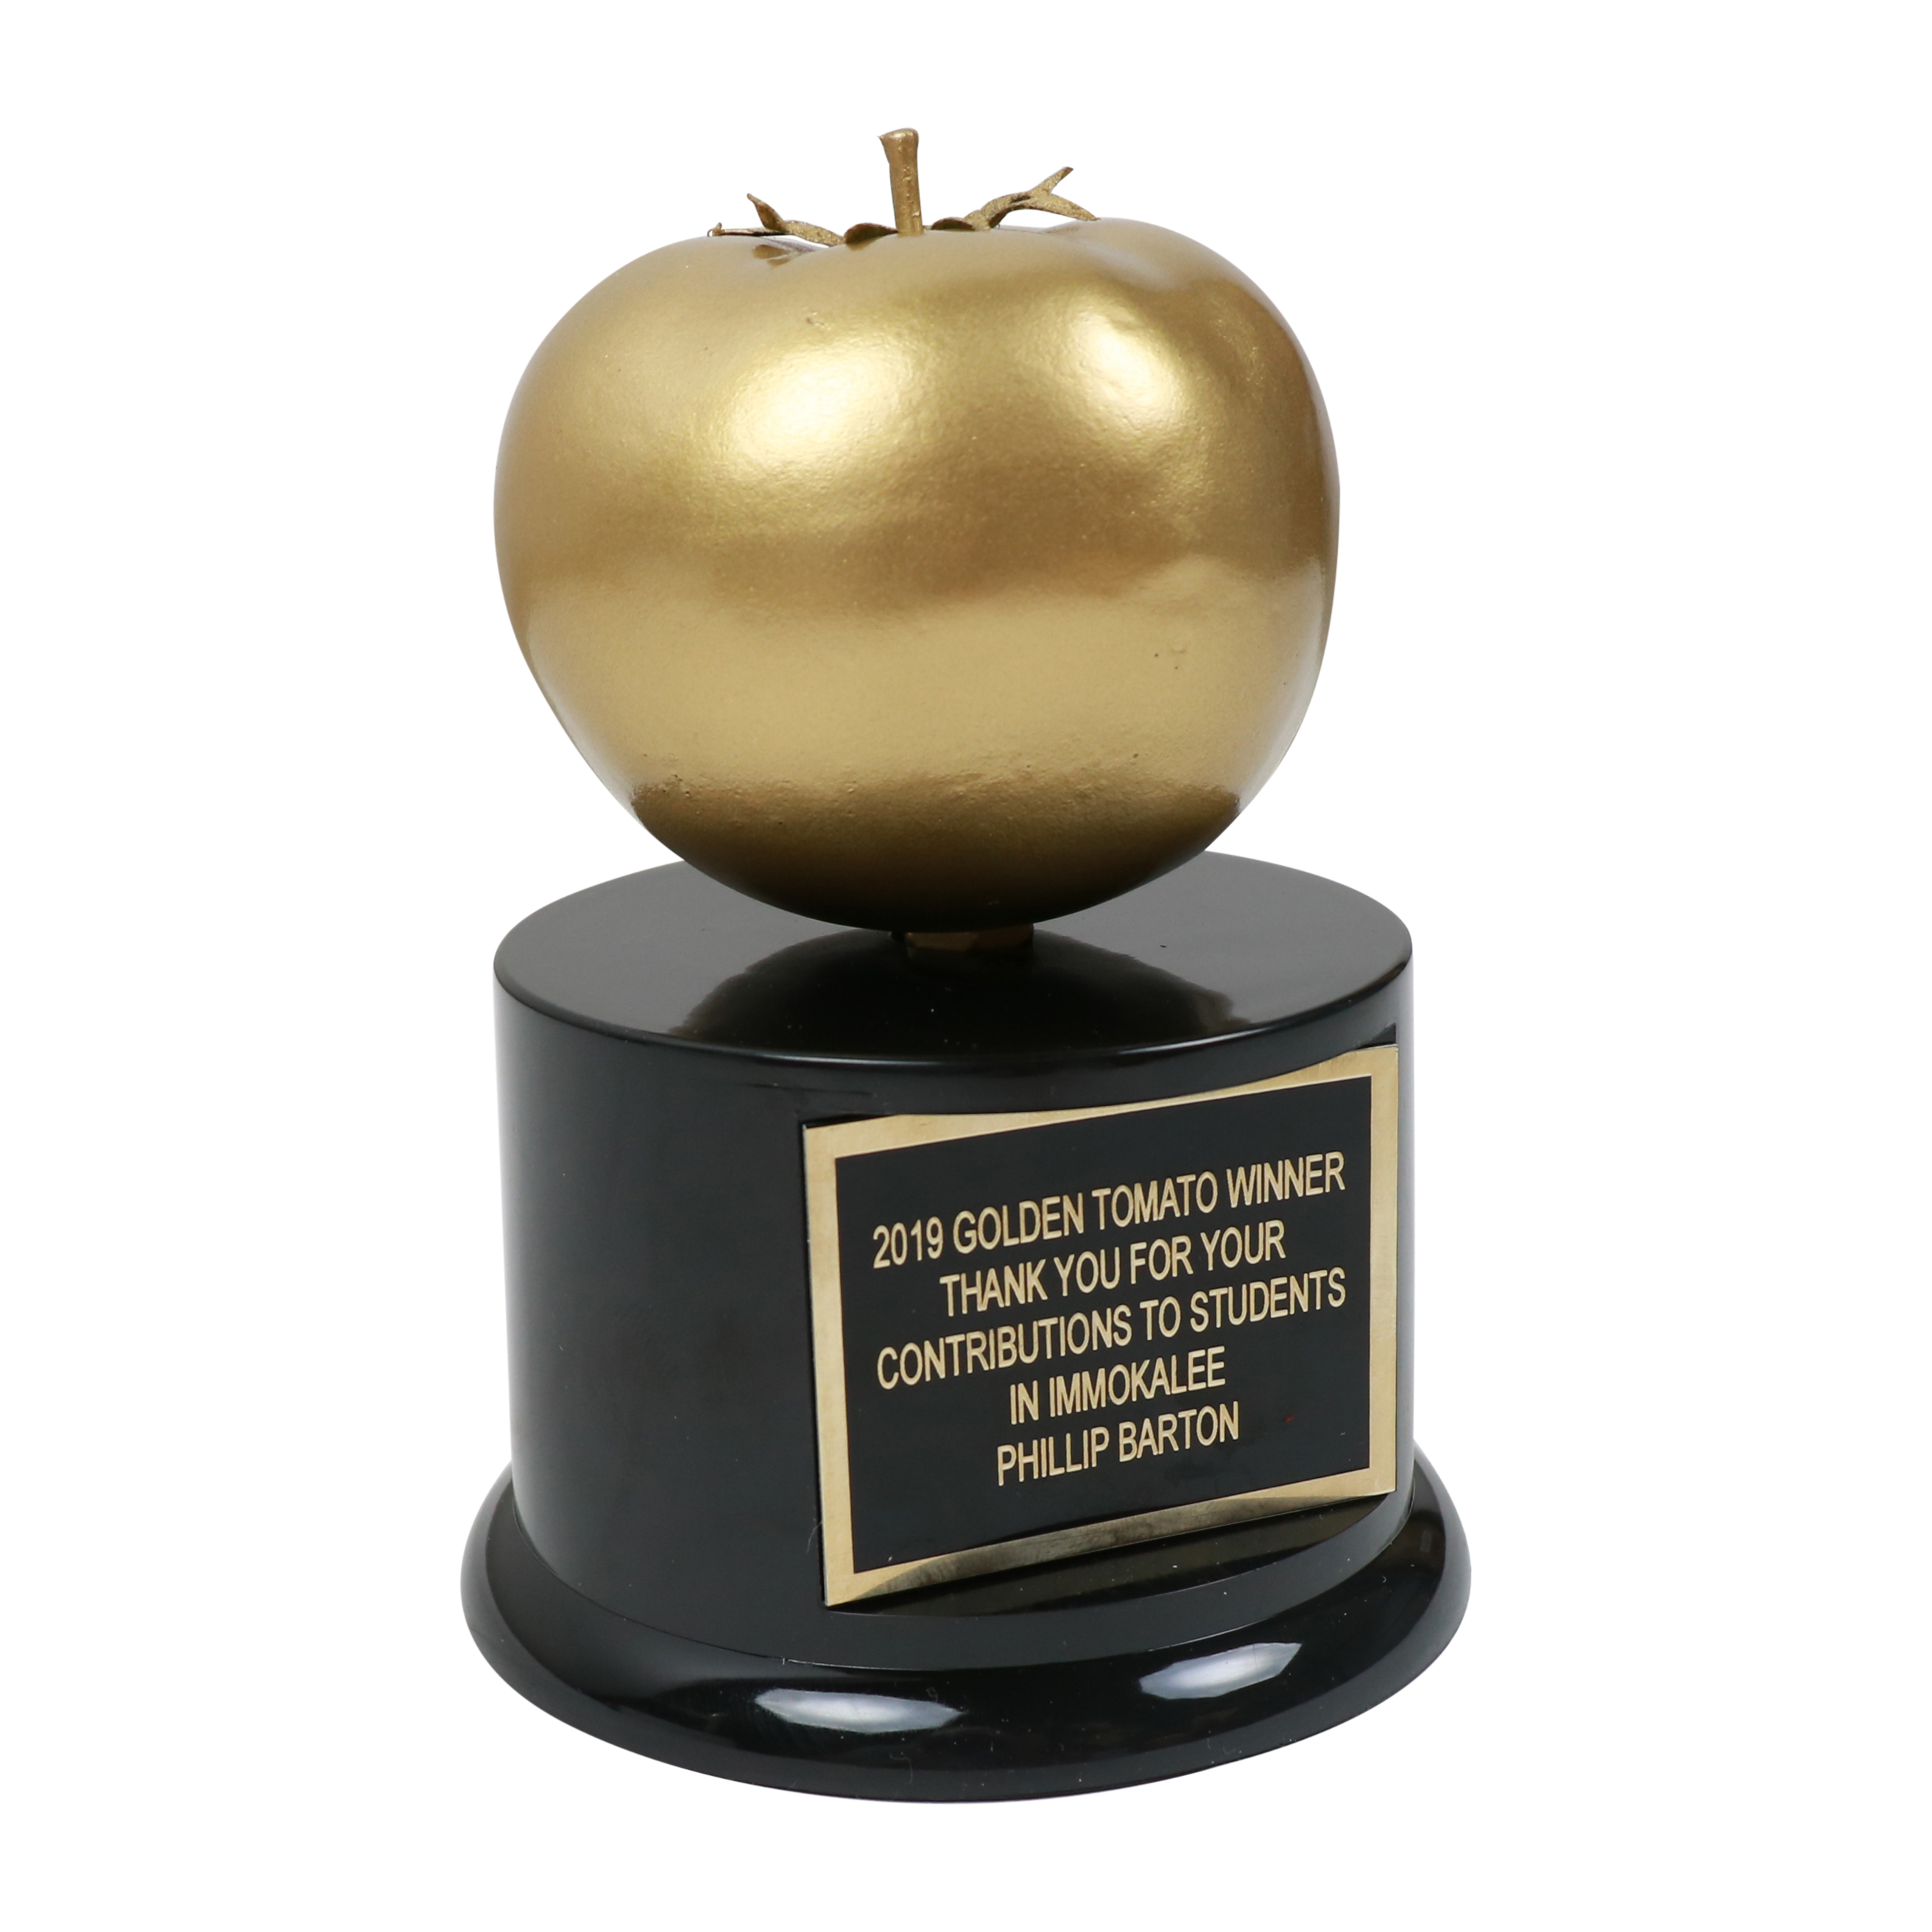 Golden Tomato Awards 2020